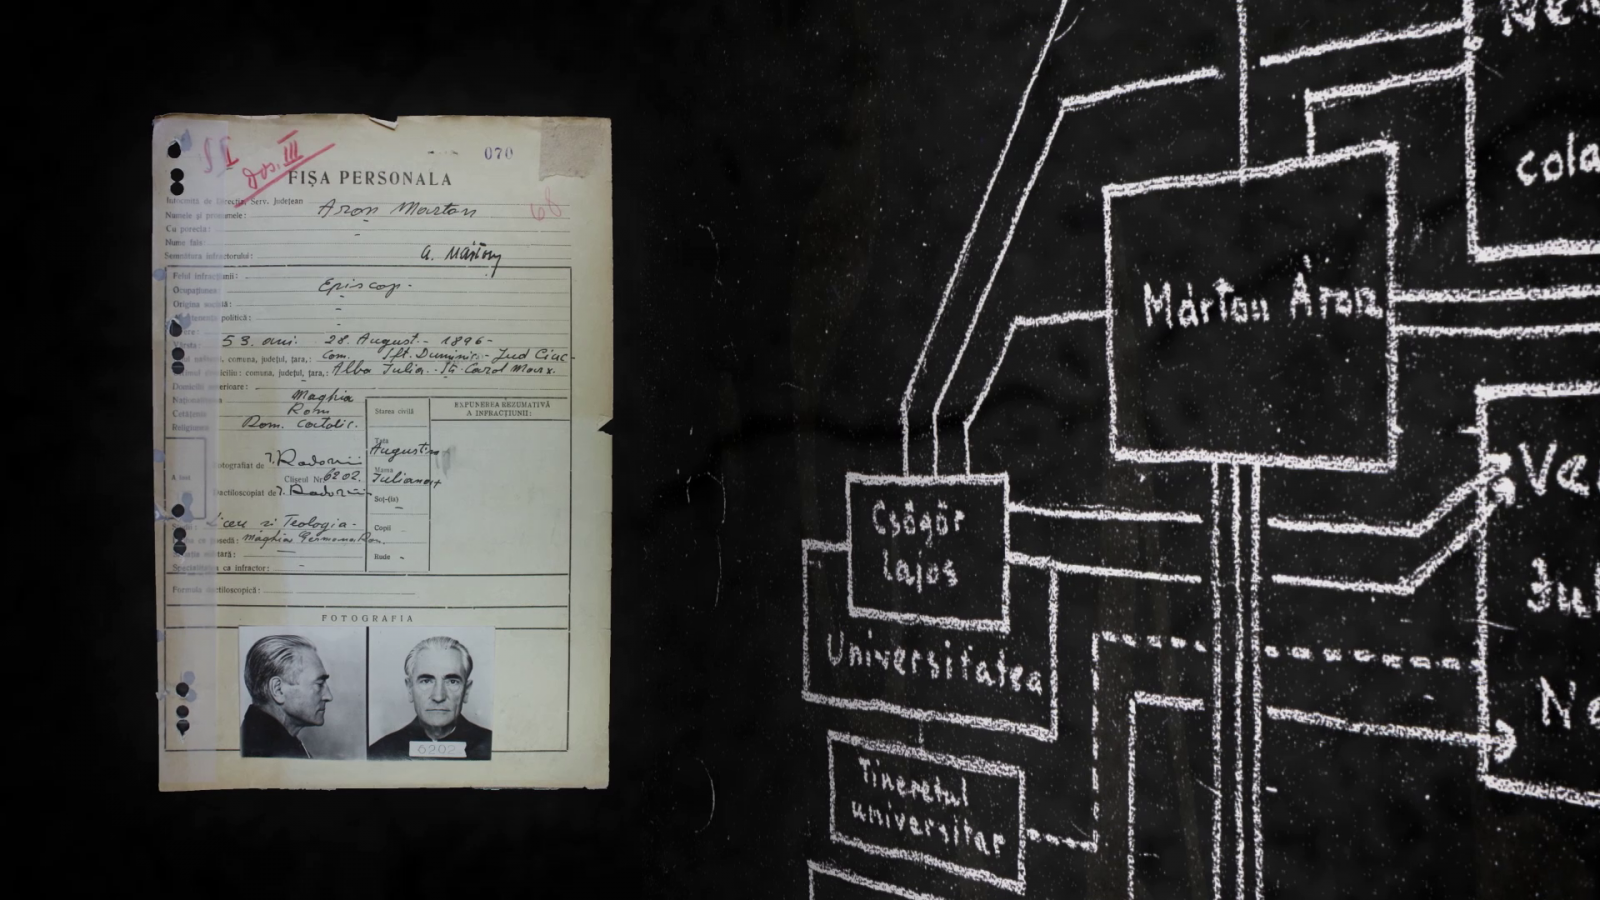 Márton Áron letartóztatási adatlapja 1949-ből | Forrás: Nagy Mihály Zoltán közlése 